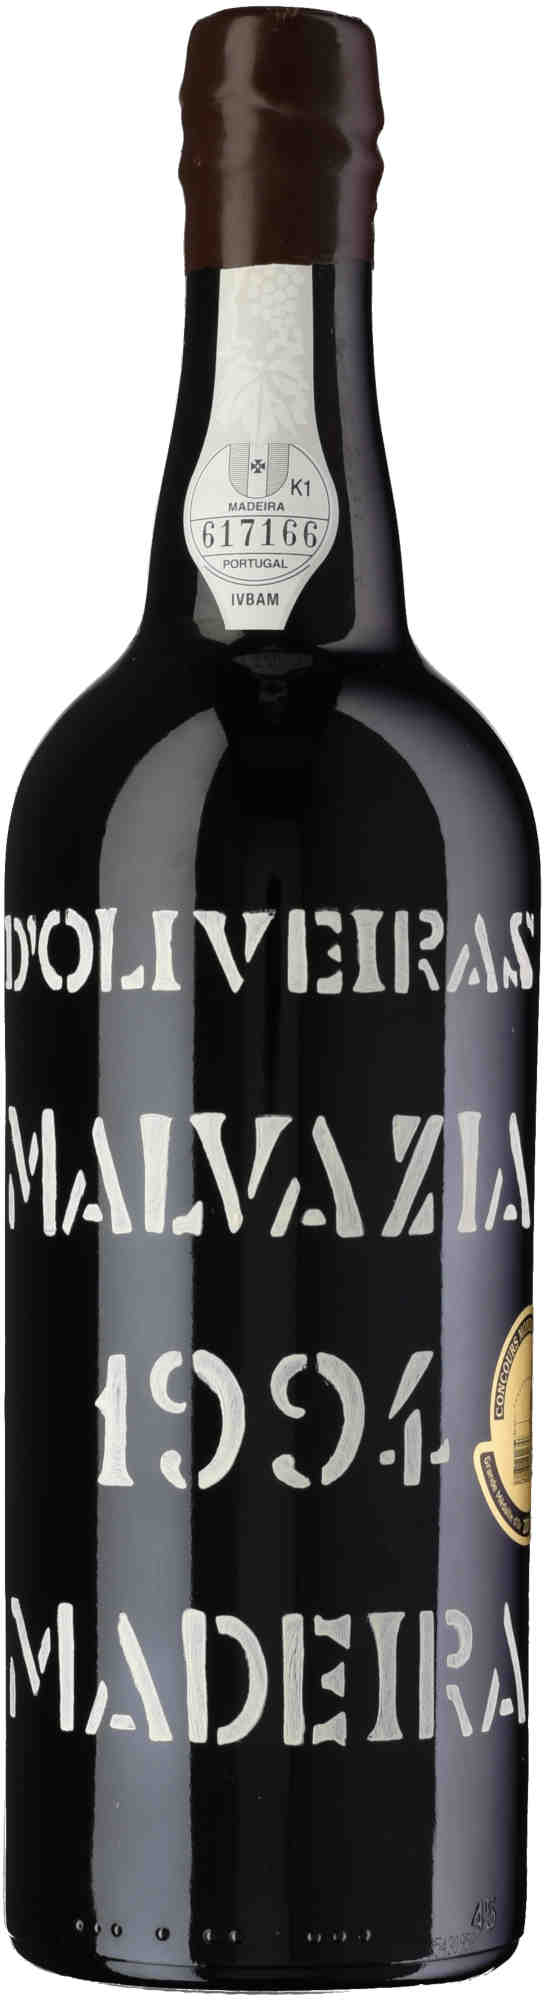 D-Oliveira-Malvazia-1994